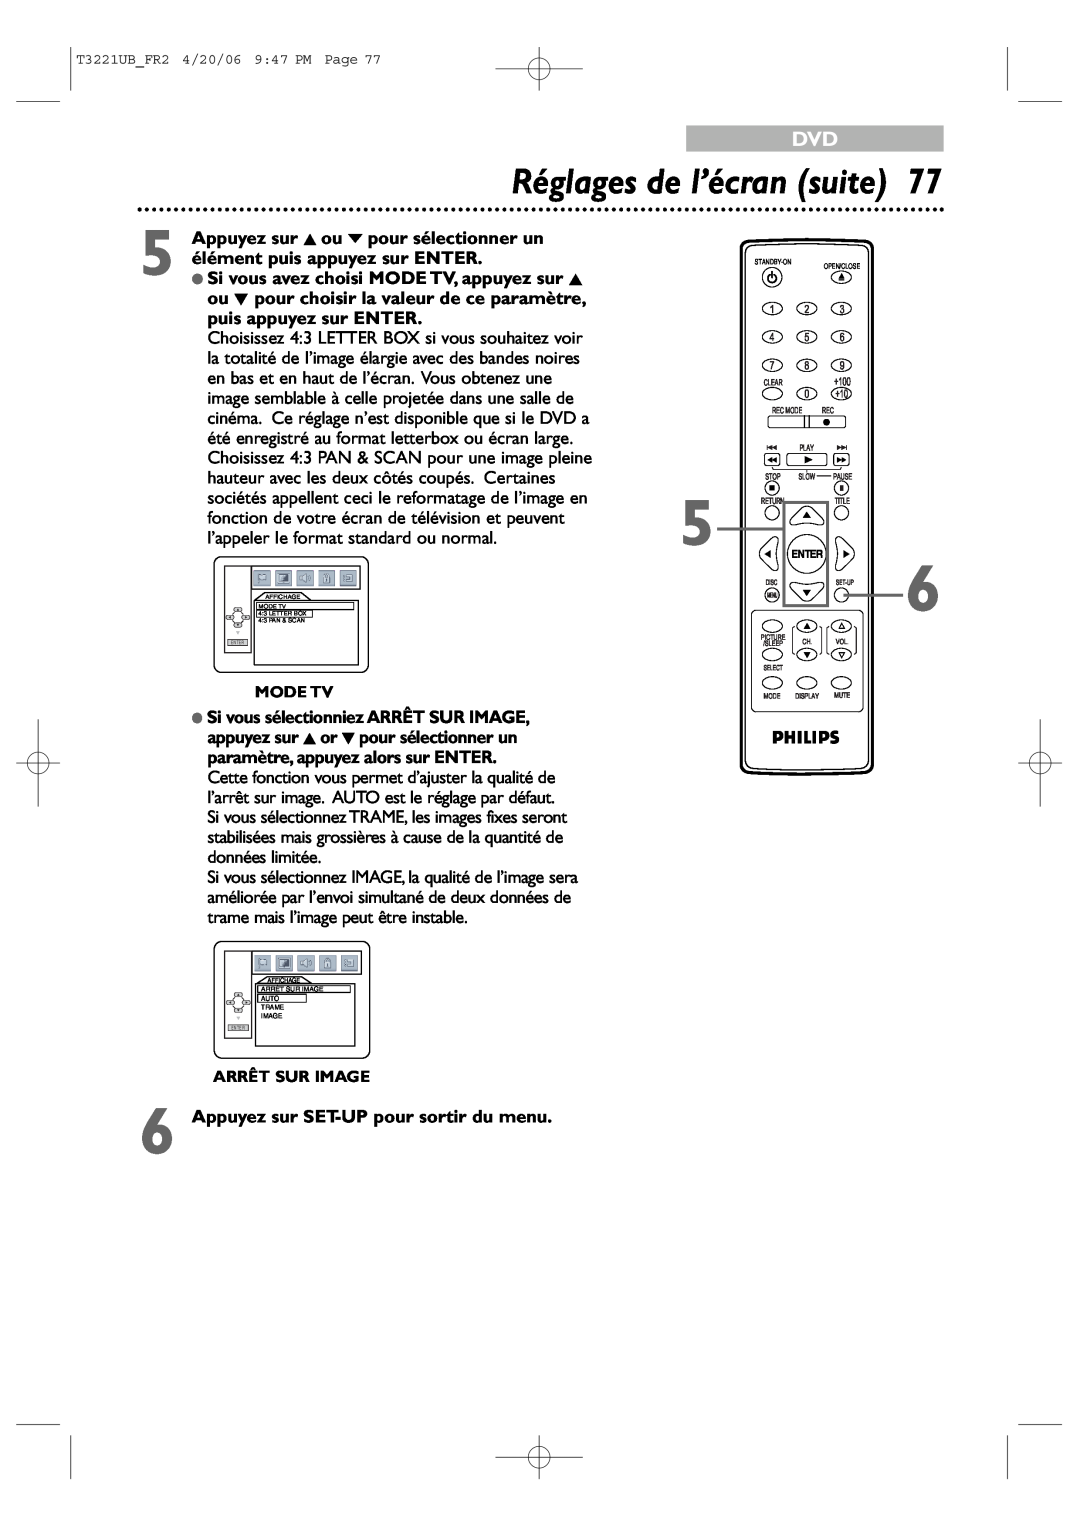 Philips 27PC4326/37 Réglages de l’écran suite, Appuyez sur K ou p pour sélectionner un, élément puis appuyez sur ENTER 